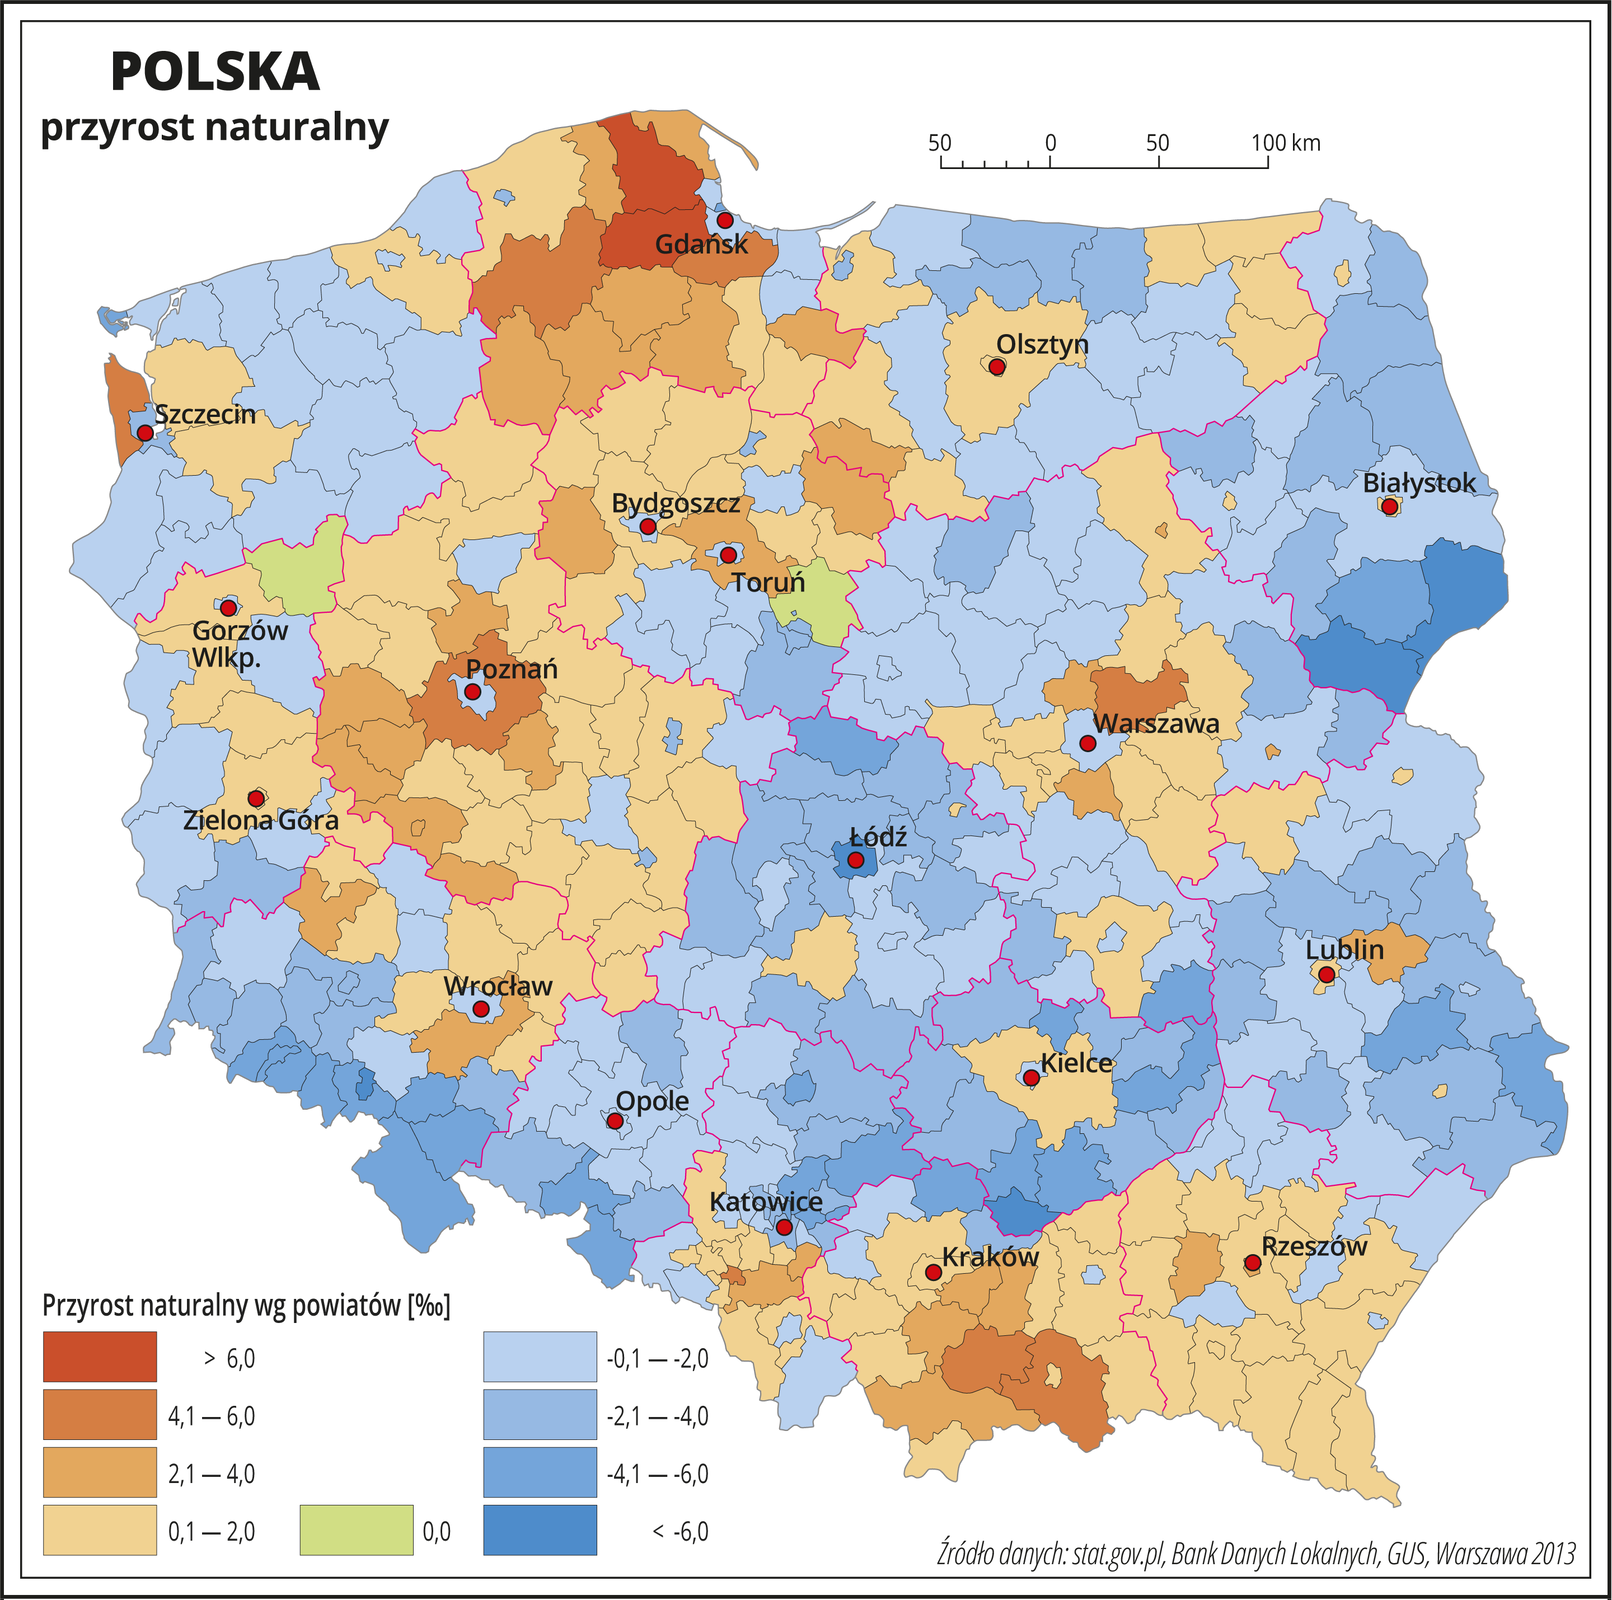 Ilustracja przedstawia mapę Polski z podziałem na województwa i powiaty. Na mapie przedstawiono przyrost naturalny. Granice województw zaznaczone są czerwoną linią. Granice powiatów zaznaczone są czarną linią. Odcieniami koloru pomarańczowego przedstawiono powiaty, w których przyrost naturalny jest dodatni (województwo pomorskie, wielkopolskie, podkarpackie, małopolskie, centralna część województwa mazowieckiego i południowa część województwa śląskiego), a odcieniami koloru niebieskiego – ujemny (pozostałe województwa). Kolorem zielonym oznaczono powiaty, w których przyrost naturalny jest równy zero (dwa powiaty – jeden w województwie kujawsko-pomorskim, drugi w województwie lubuskim). Czerwonymi kropkami zaznaczono miasta wojewódzkie. Po lewej stronie mapy na dole w legendzie umieszczono kolorowe prostokąty i opisano wielkość przyrostu naturalnego w promilach. Czterema odcieniami koloru pomarańczowego przedstawiono powiaty, w których przyrost naturalny jest dodatni (do dwóch , dwa do czterech, cztery do sześciu i powyżej sześciu promili), a czterema odcieniami koloru niebieskiego – ujemny (do dwóch , dwa do czterech, cztery do sześciu i powyżej sześciu promili). Kolorem zielonym oznaczono powiaty, w których przyrost naturalny jest równy zero.